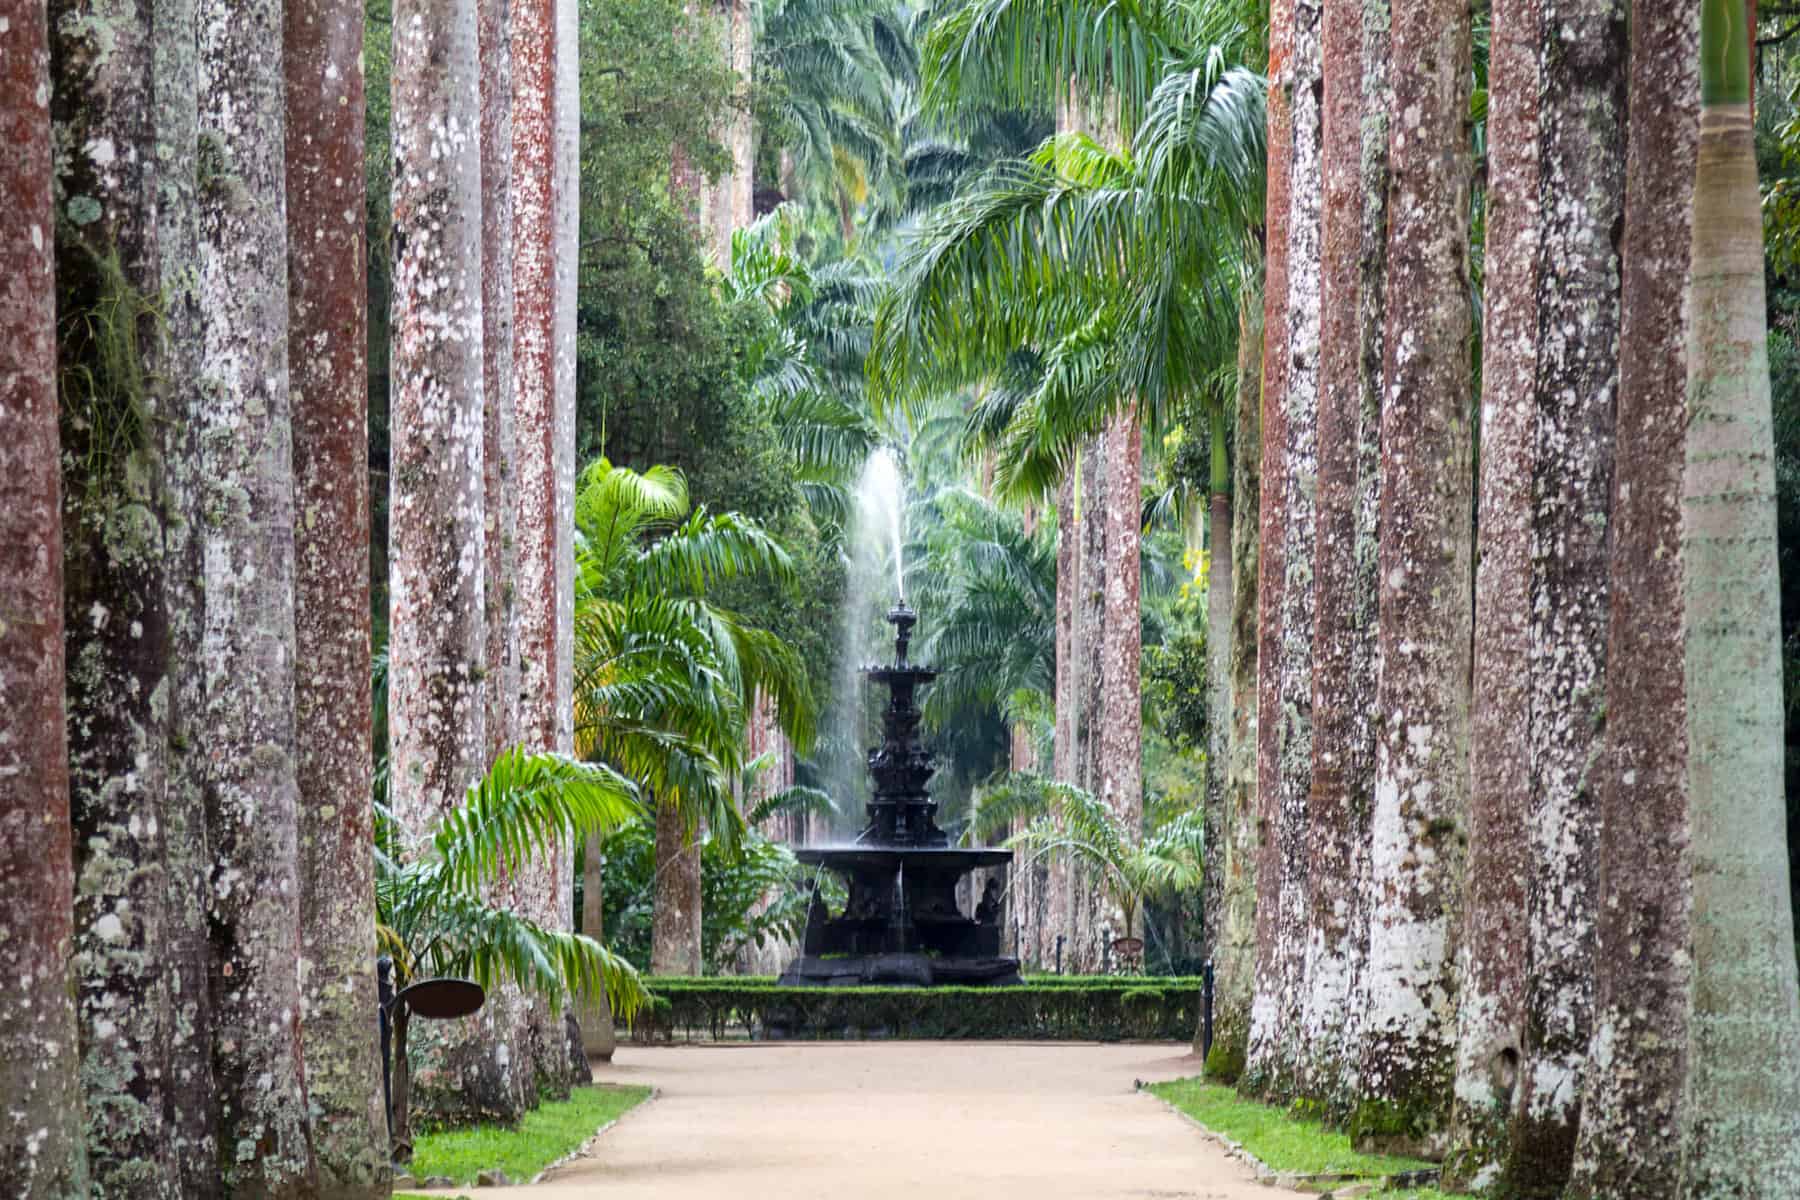 Jardim Botanico Do Rio de Janeiro